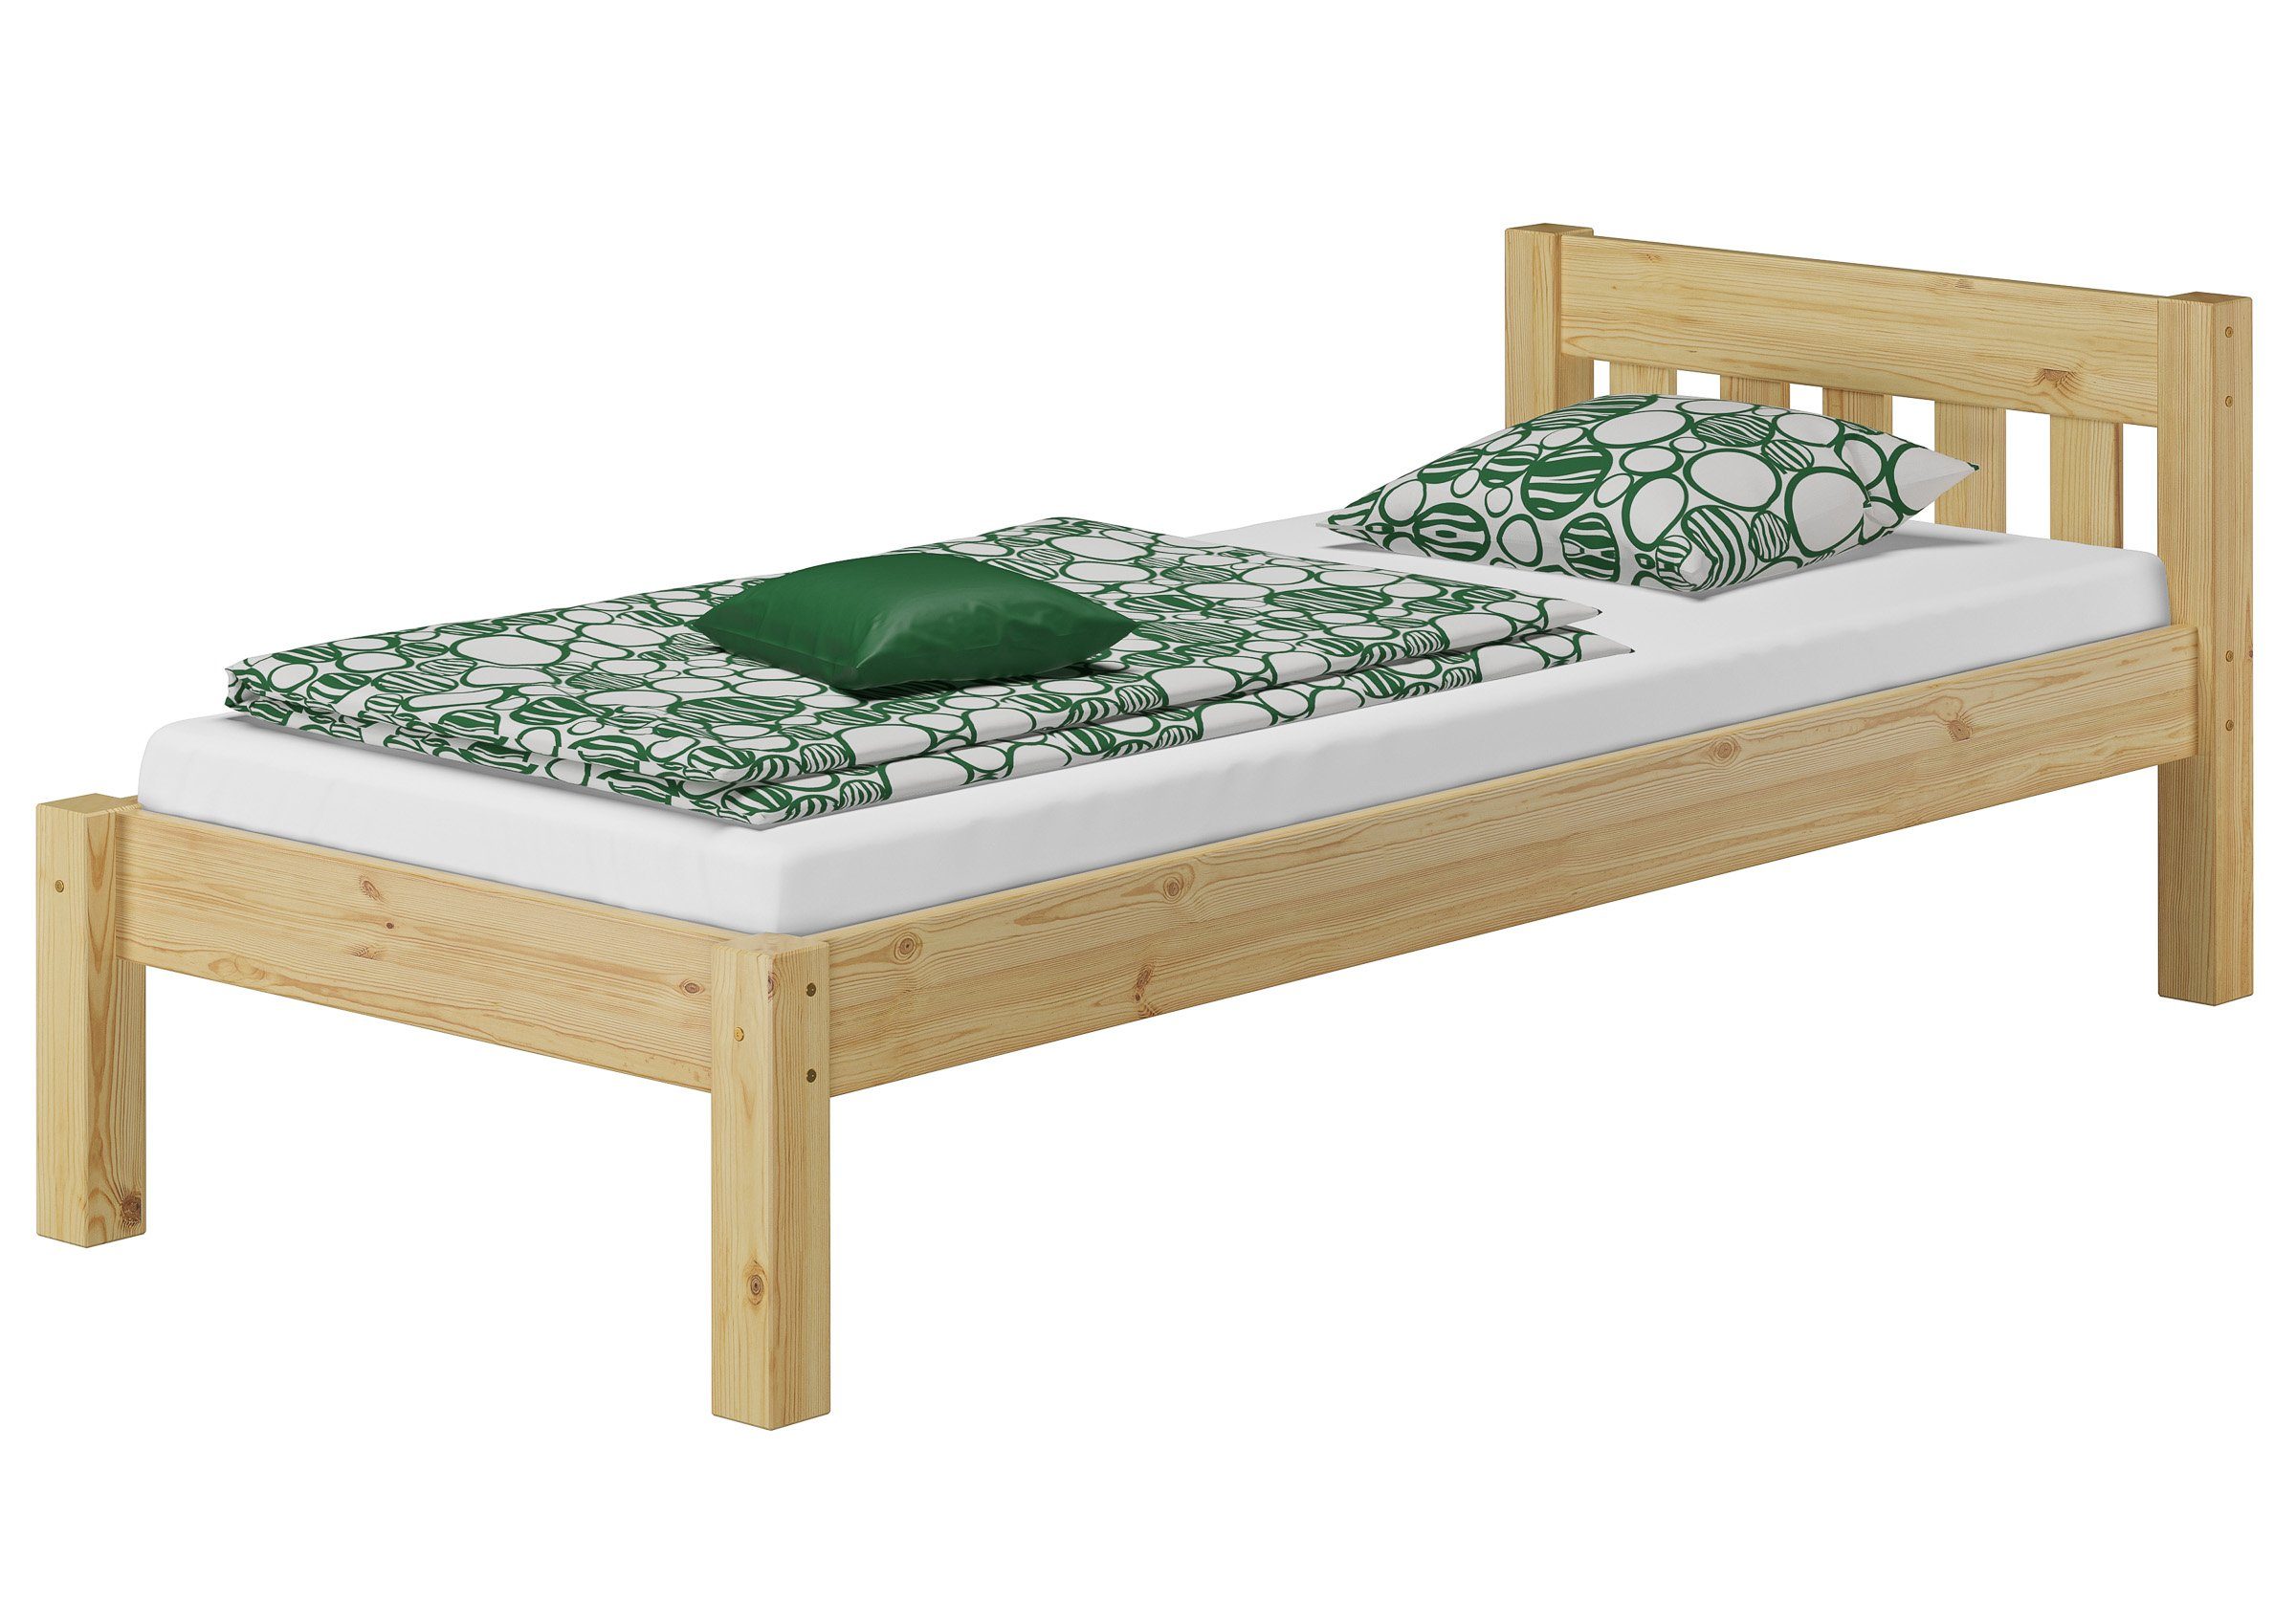 Rost Kieferfarblos Kiefer mit Gemütliches Matratze, und Bett Jugendbett lackiert 90x200 ERST-HOLZ